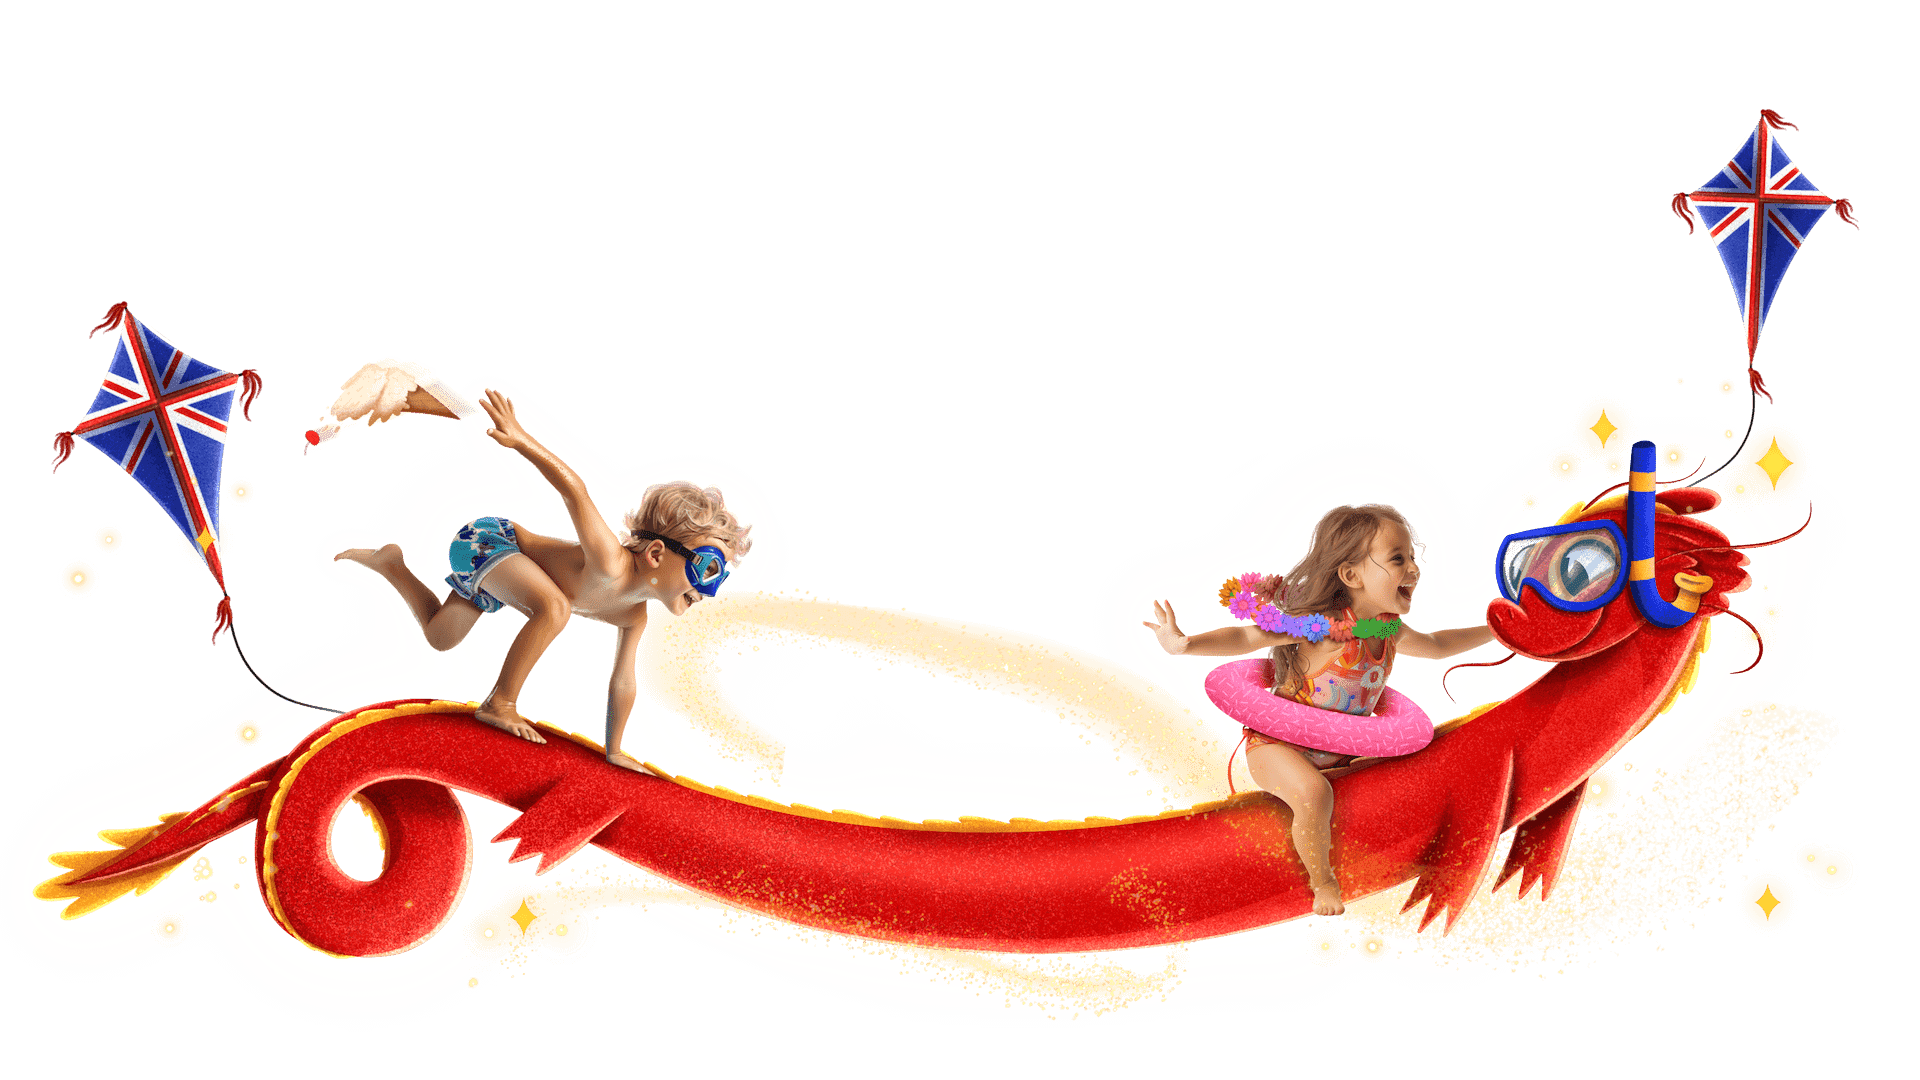 Kids riding dragon